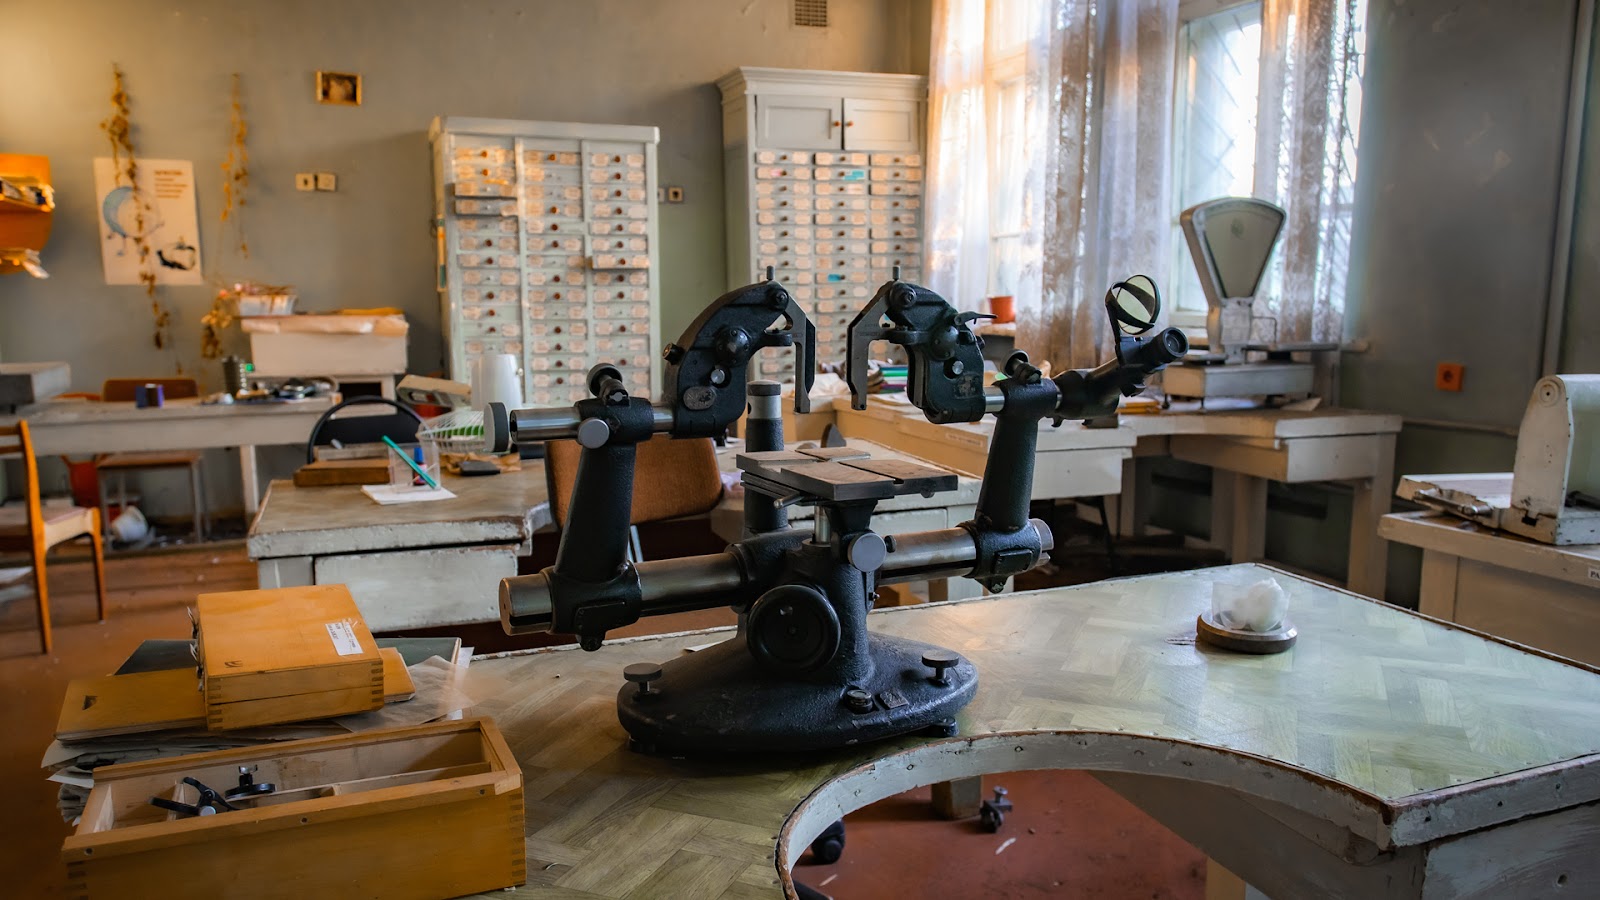 "Спасибо эффективным менеджерам" — посетил лабораторию заброшенного советского завода. На месте осталось всё!